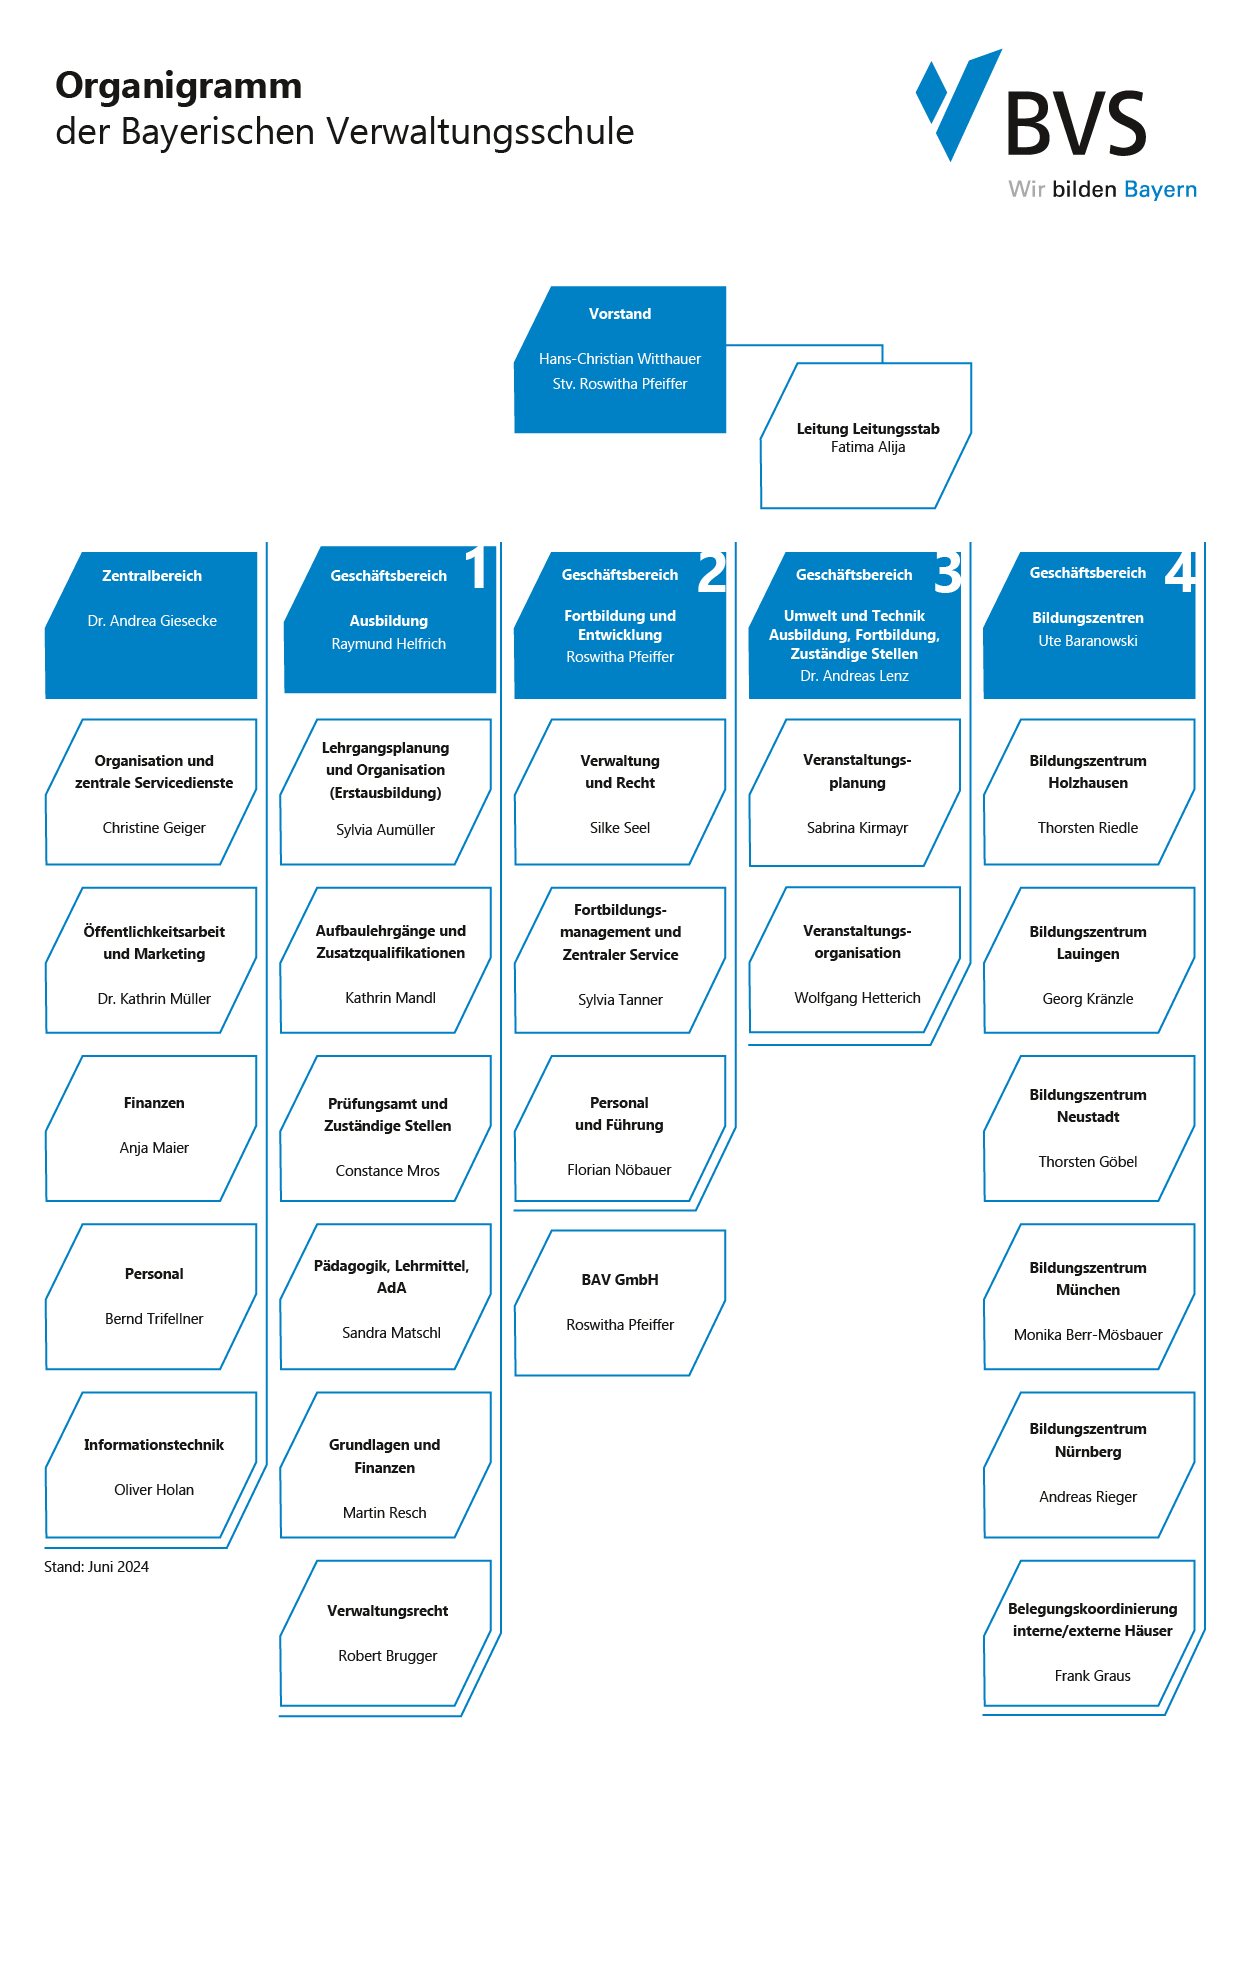 Das Organigramm zeigt die Organisationsstruktur der Bayerischen Verwaltungsschule (BVS)